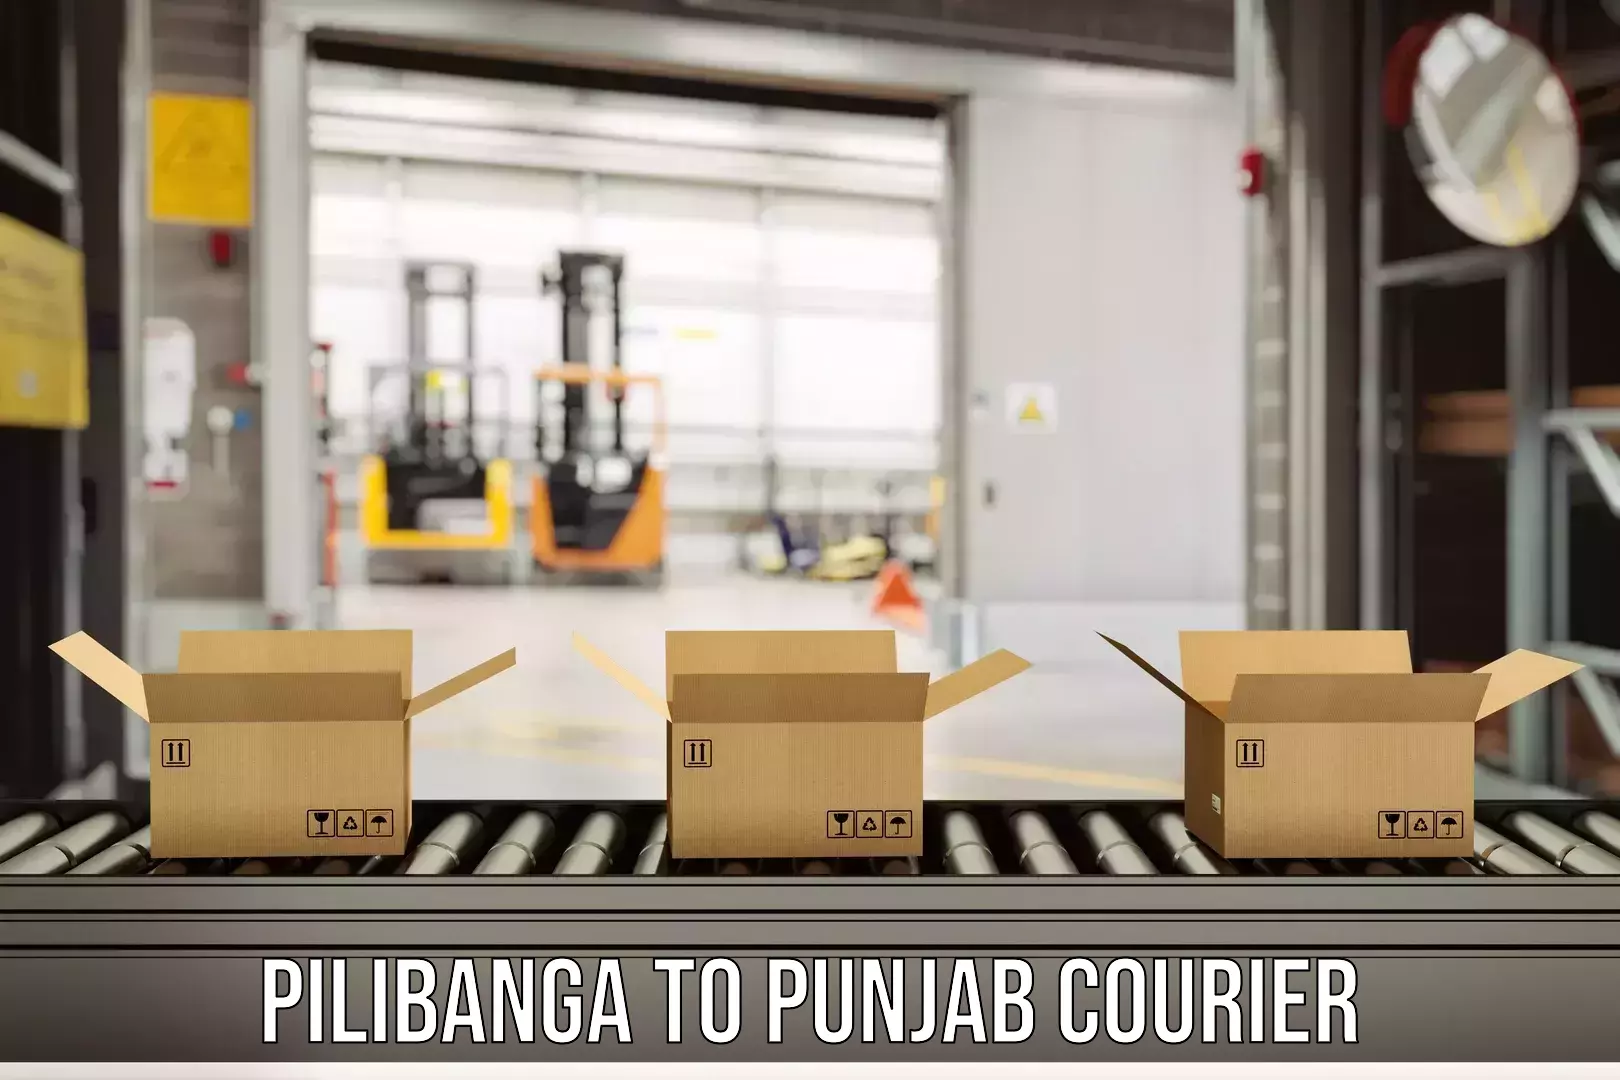 Efficient cargo handling Pilibanga to Rupnagar